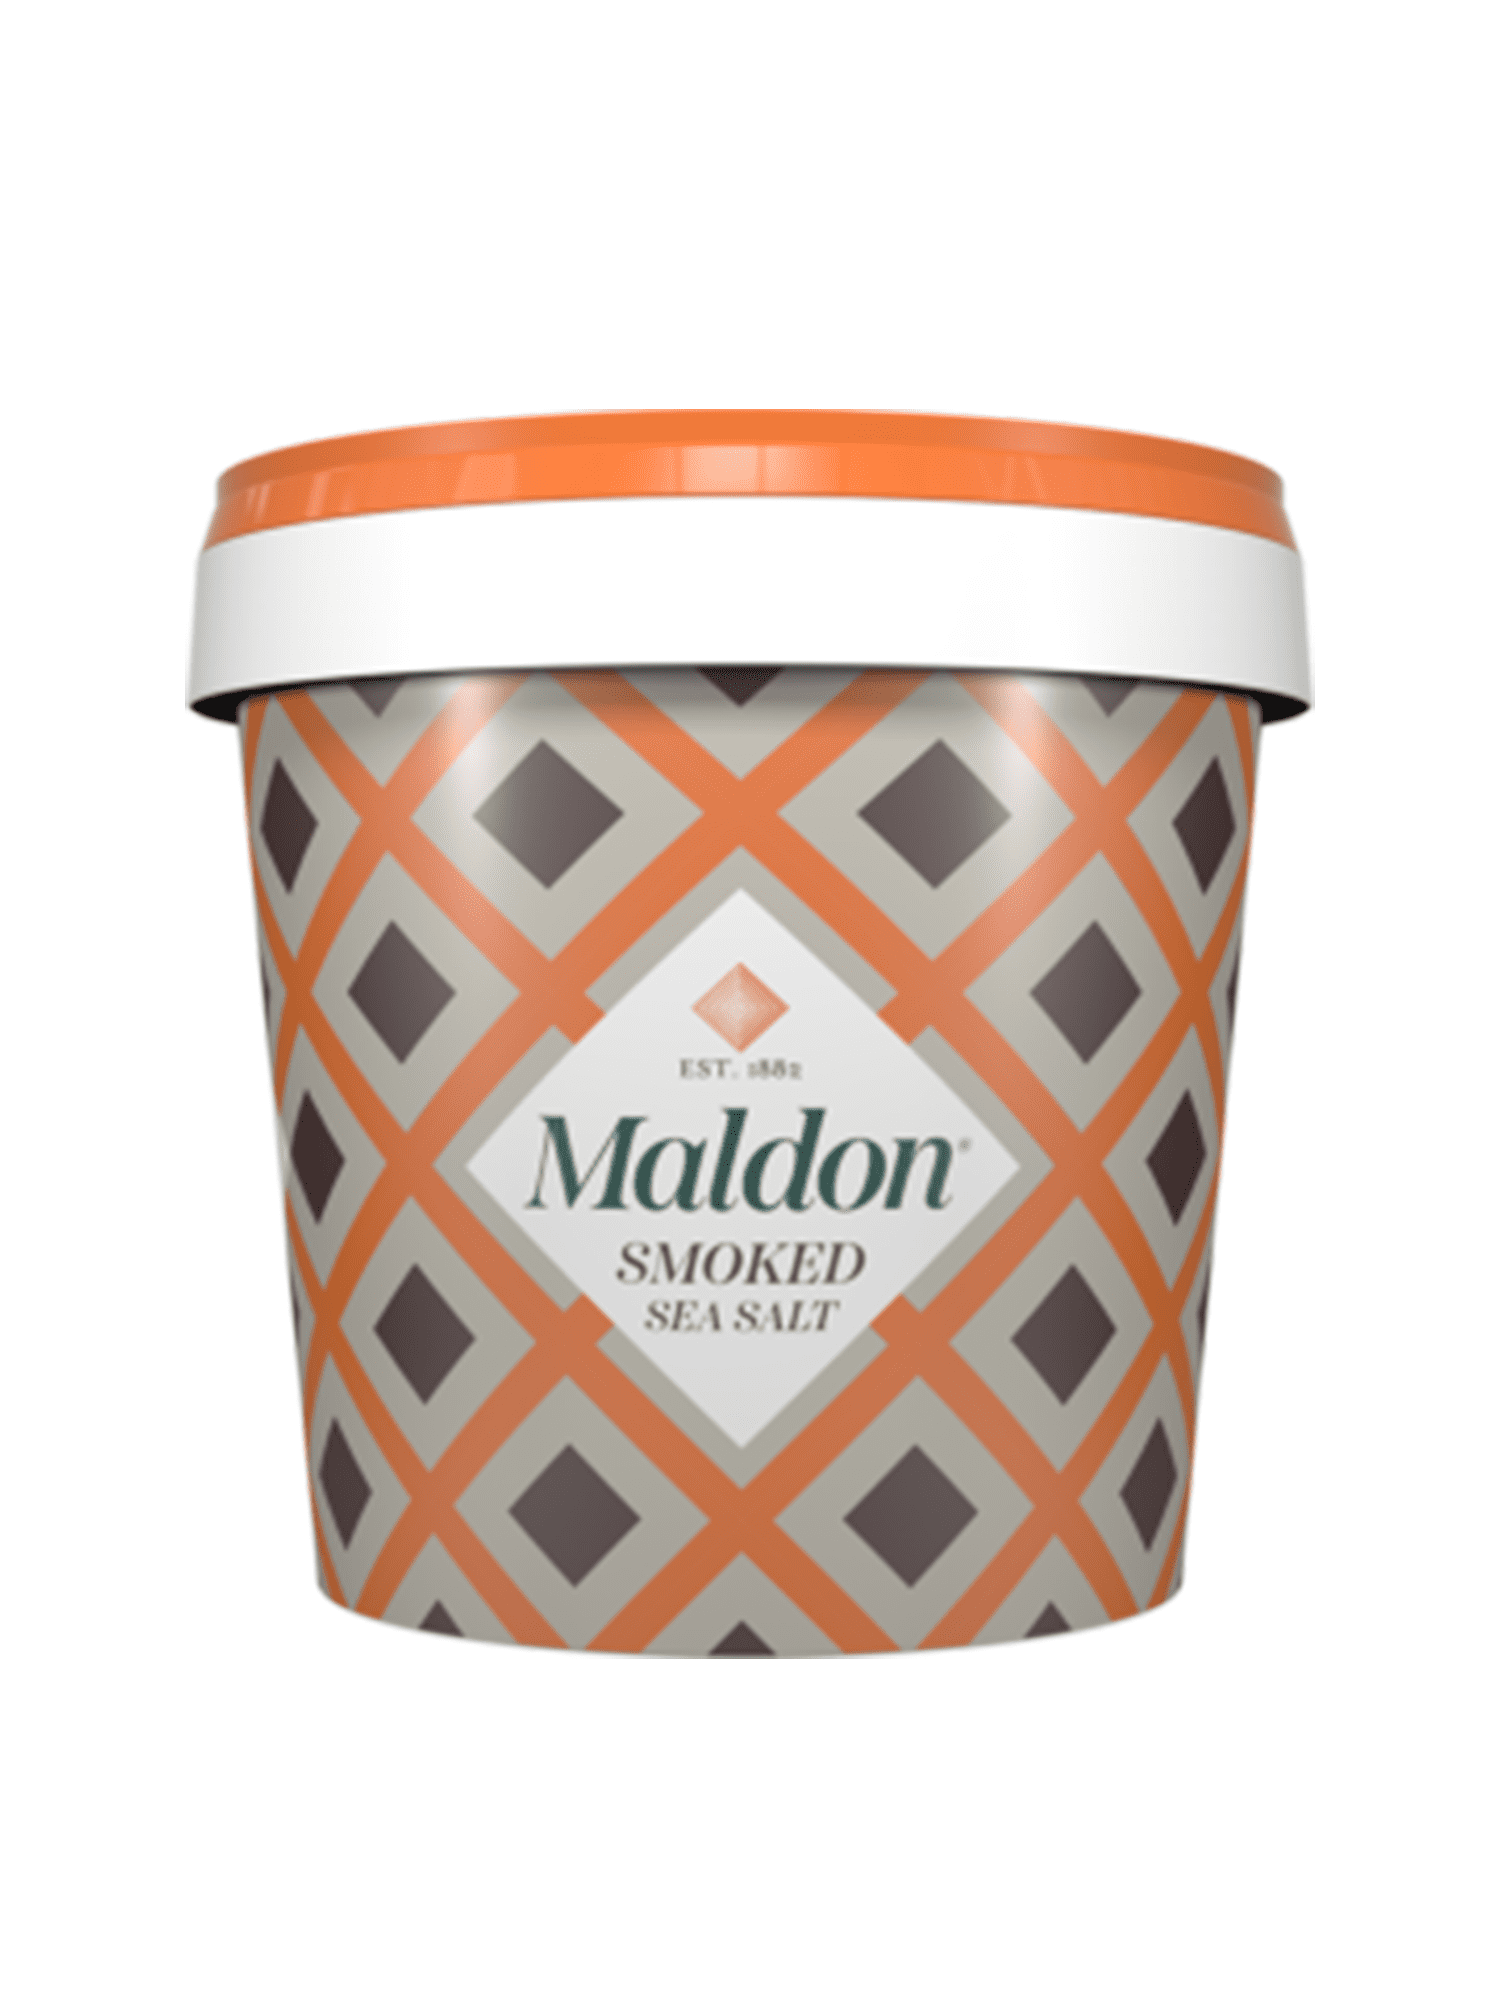 MALDON SEA SALT - Tastings Gourmet Market